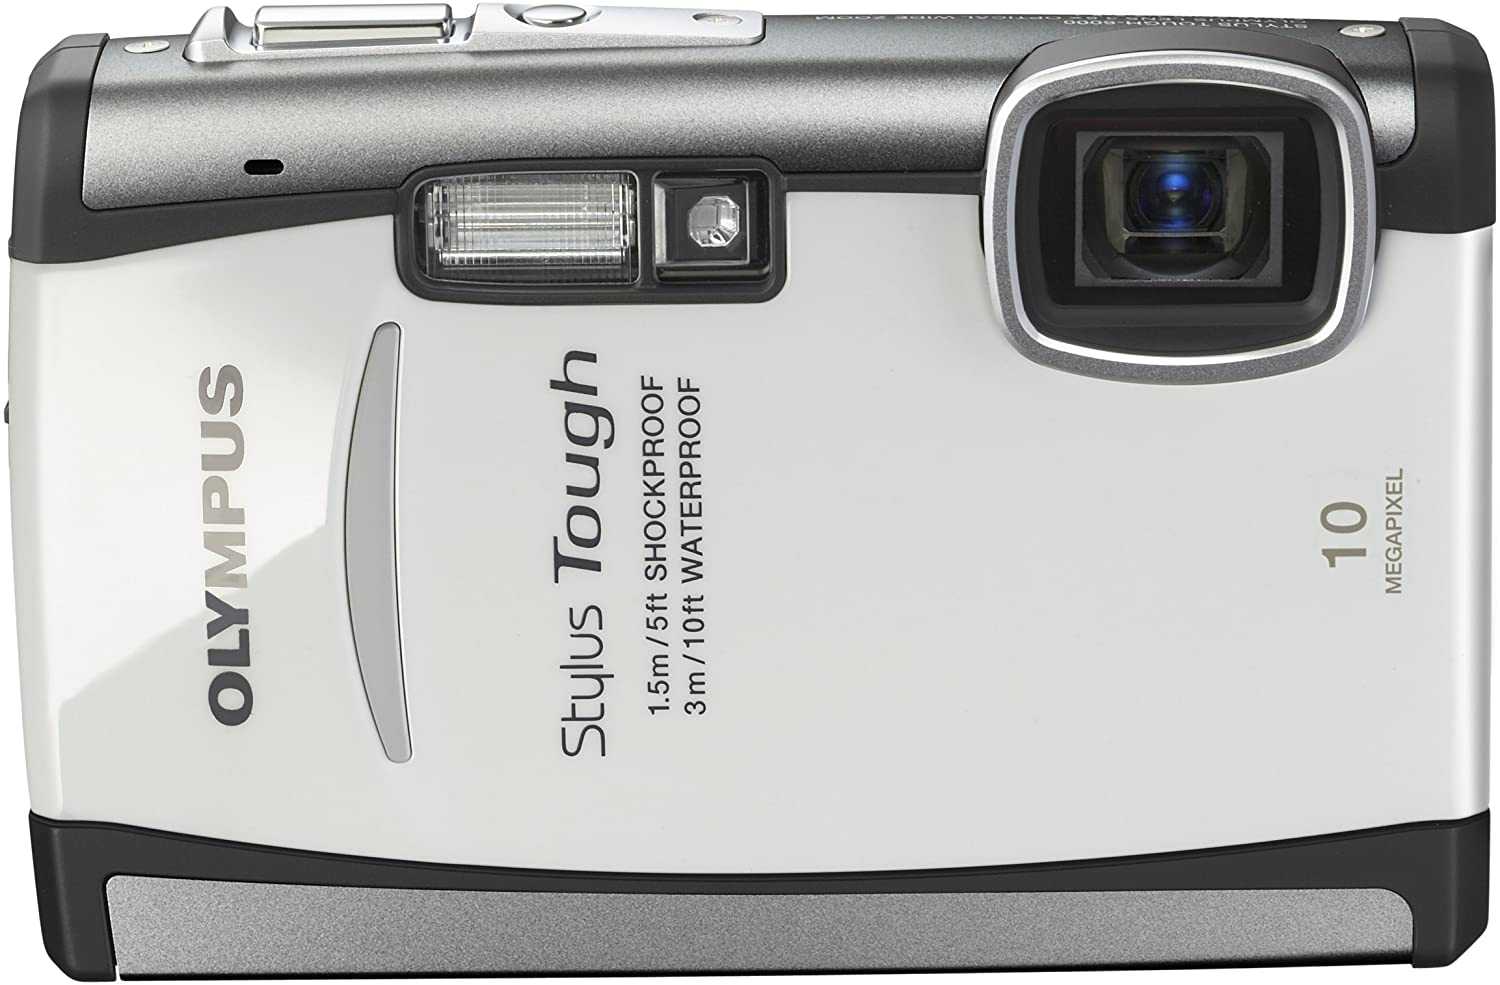 Цифровой фотоаппарат Olympus Stylus µ 7030 - подробные характеристики обзоры видео фото Цены в интернет-магазинах где можно купить цифровую фотоаппарат Olympus Stylus µ 7030